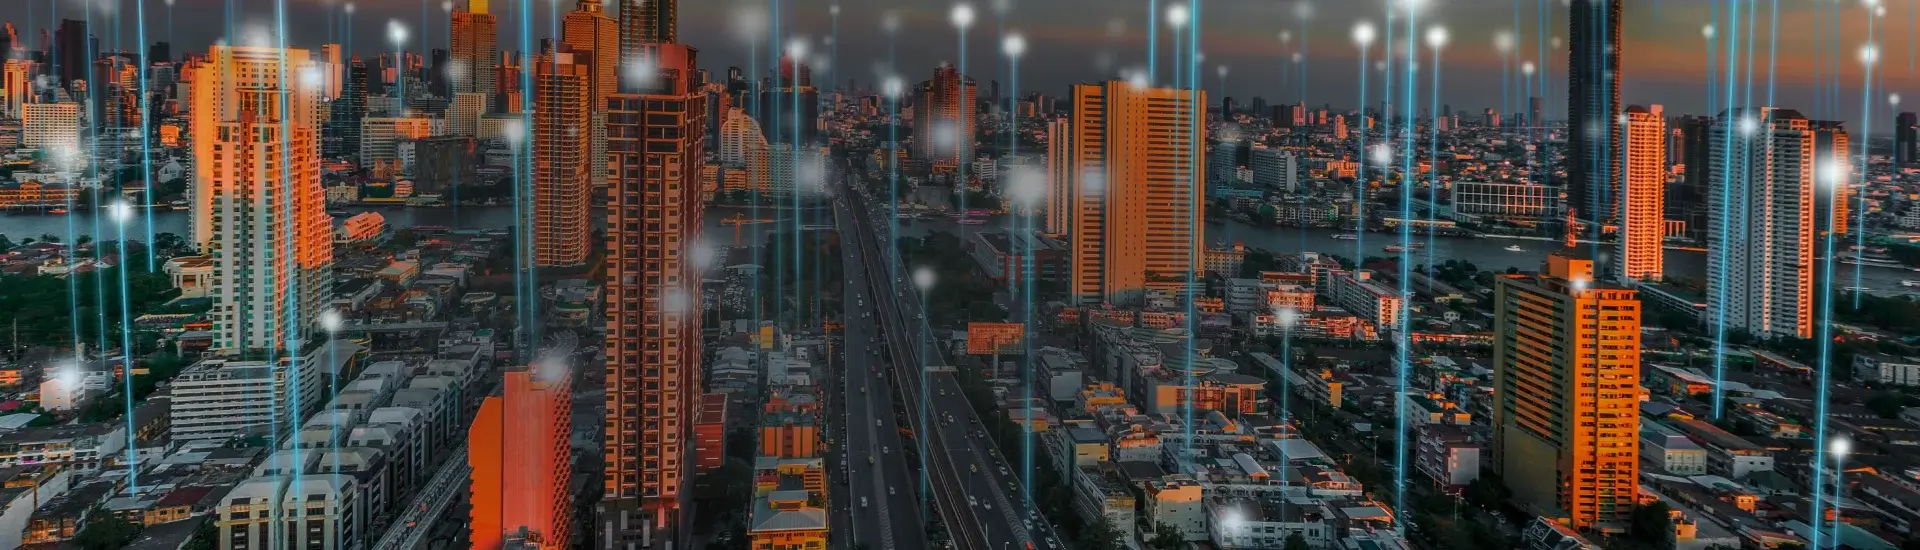 Imagem de cidade com grandes prédios e feixes de luz, que ilustram conexão, indo em direção ao céu